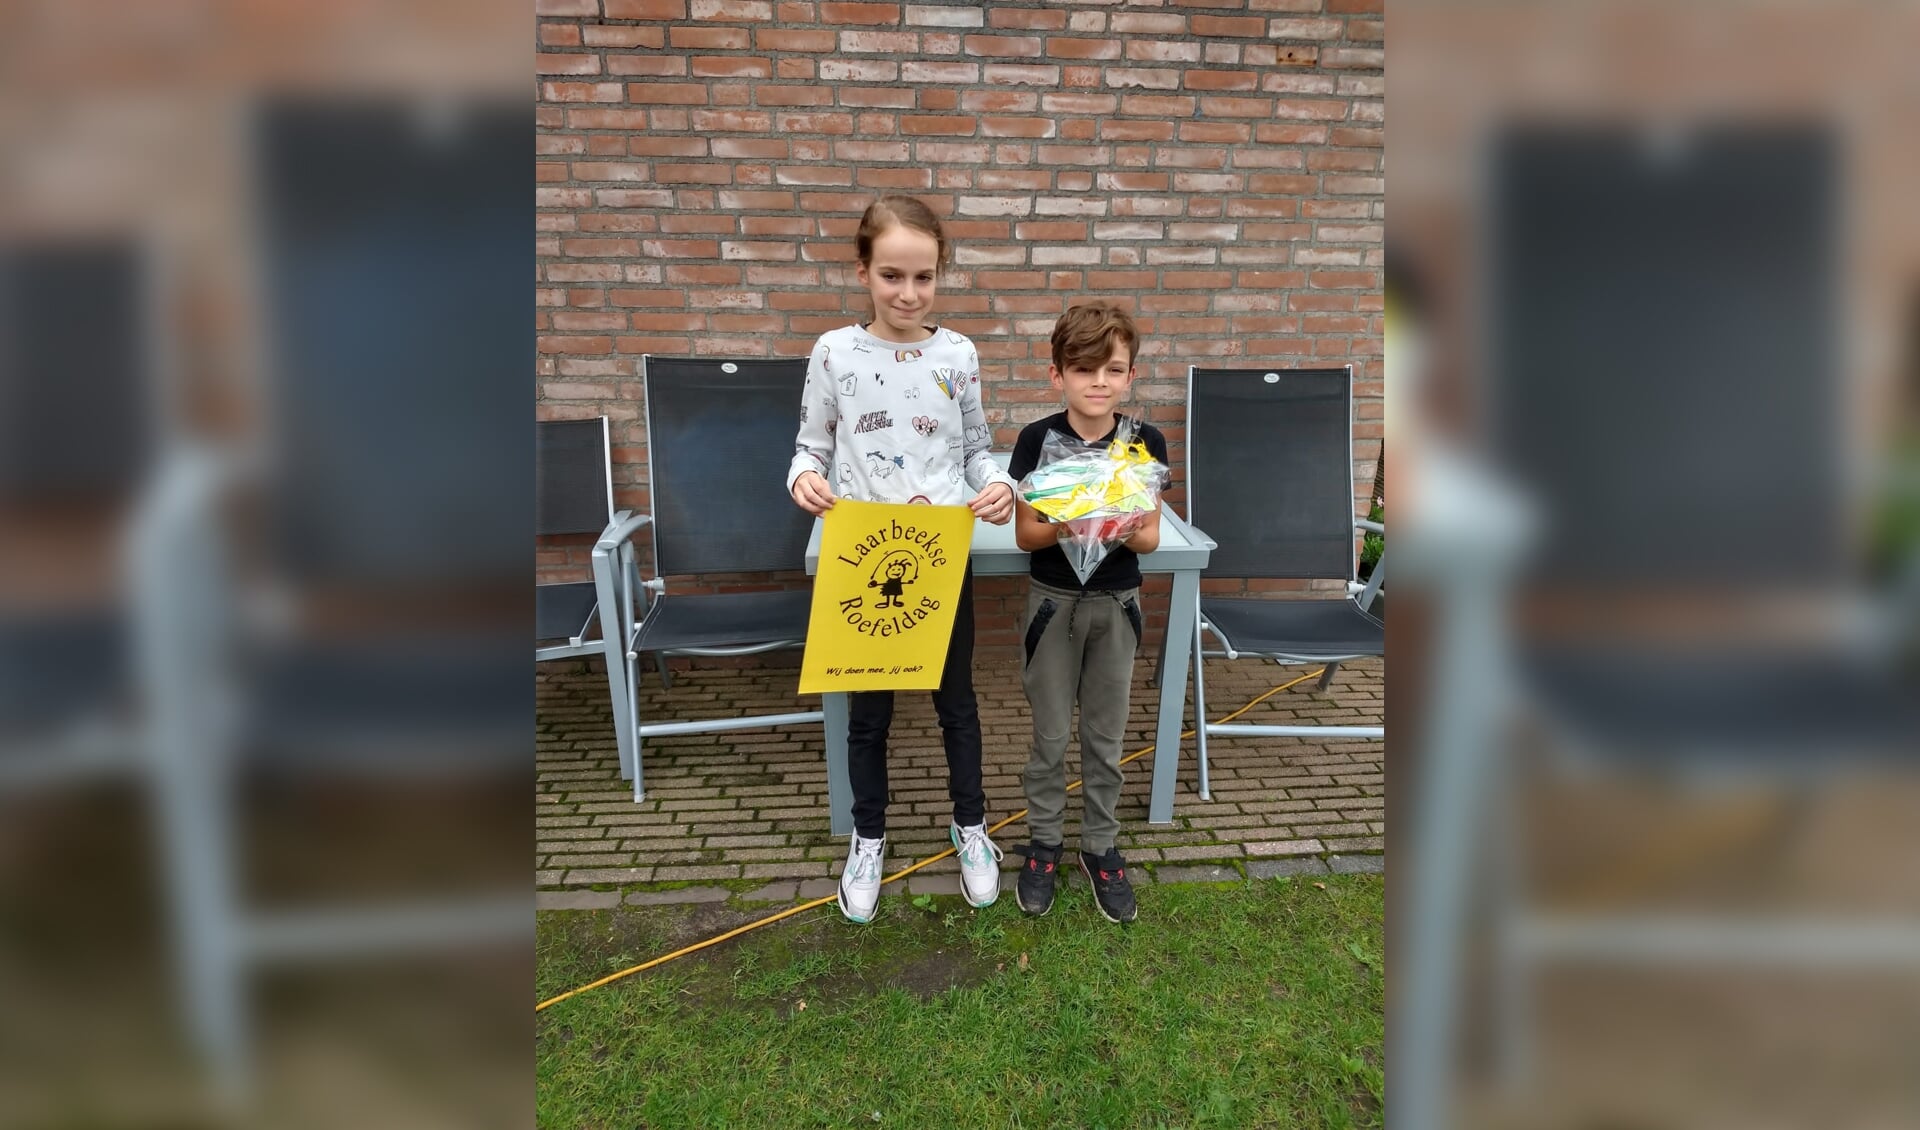 De winnaars van de Roefelmaand: Nina en Nick van Eck